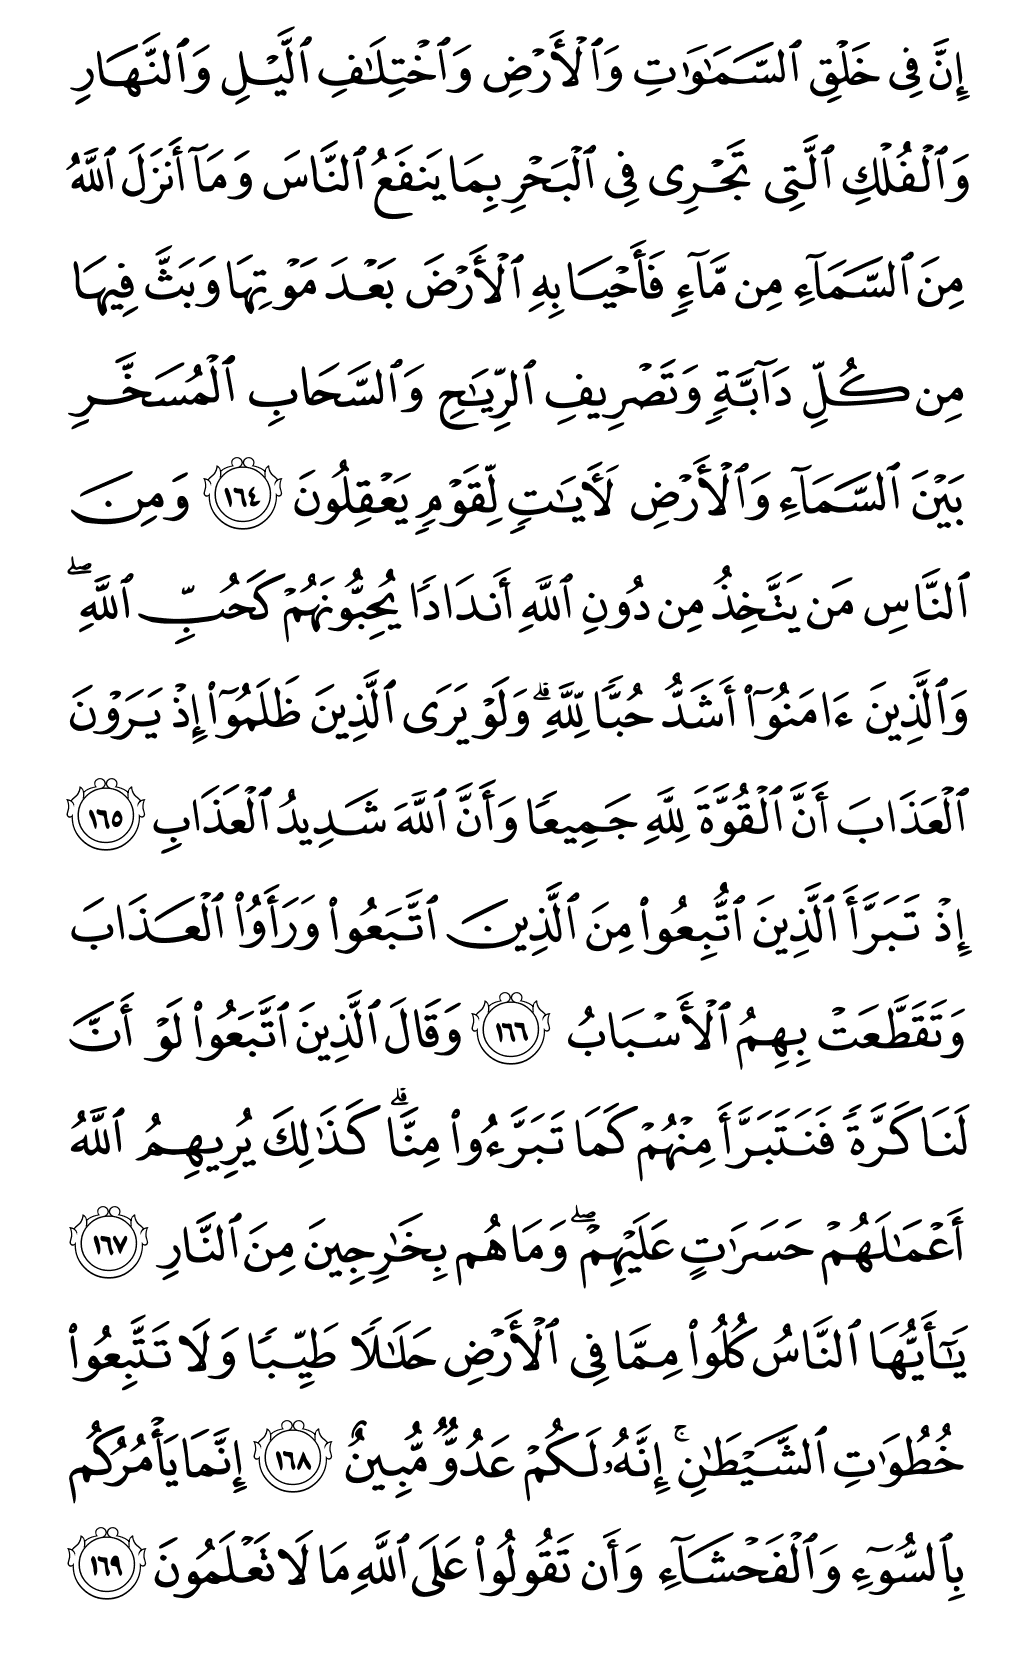 الصفحة رقم 25 من القرآن الكريم